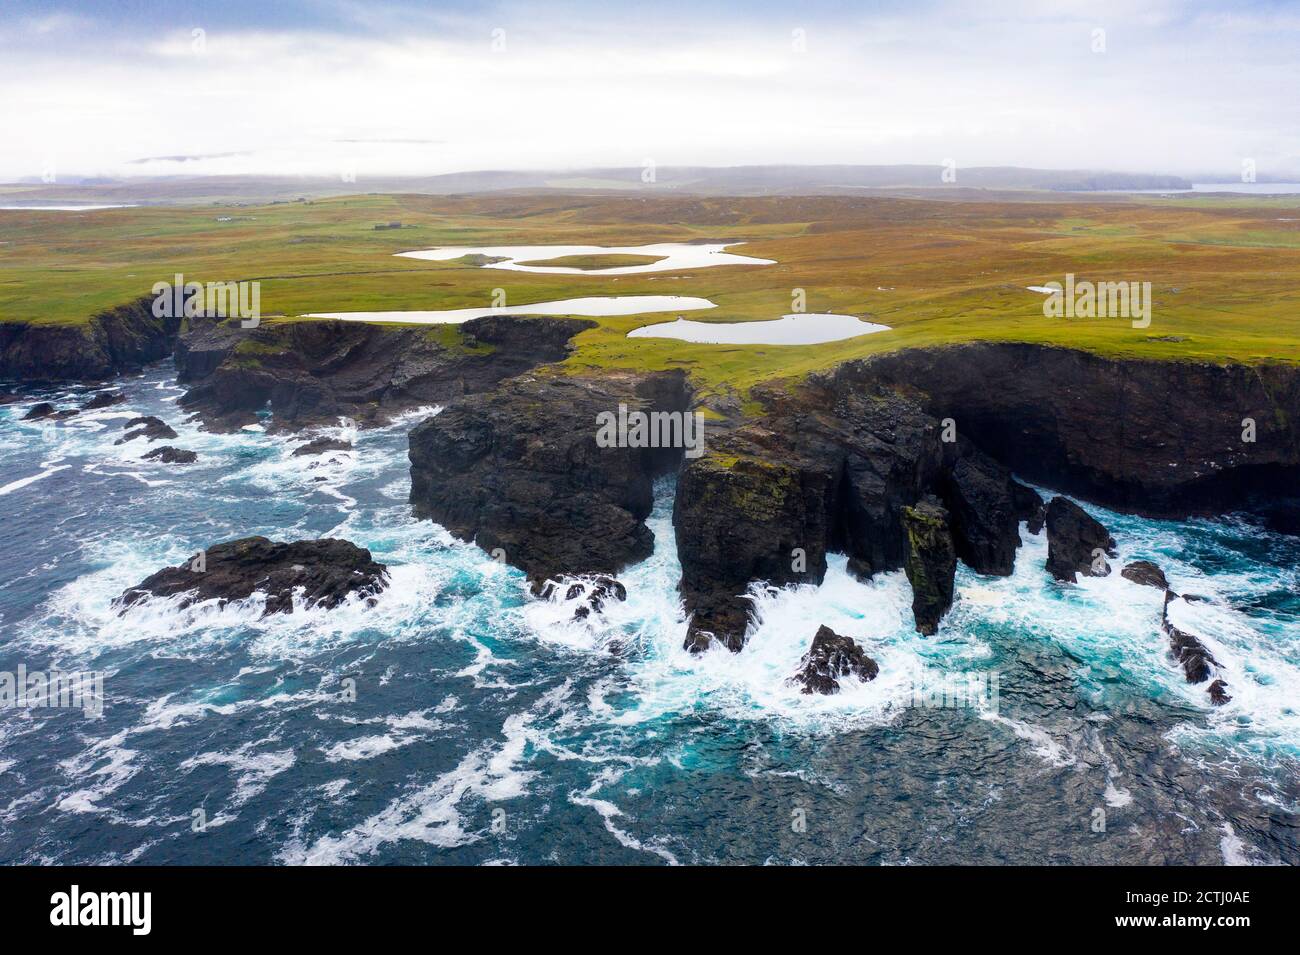 Falaises spectaculaires sur la côte à Eshaness à Northmavine , partie continentale nord des îles Shetland, Écosse, Royaume-Uni Banque D'Images